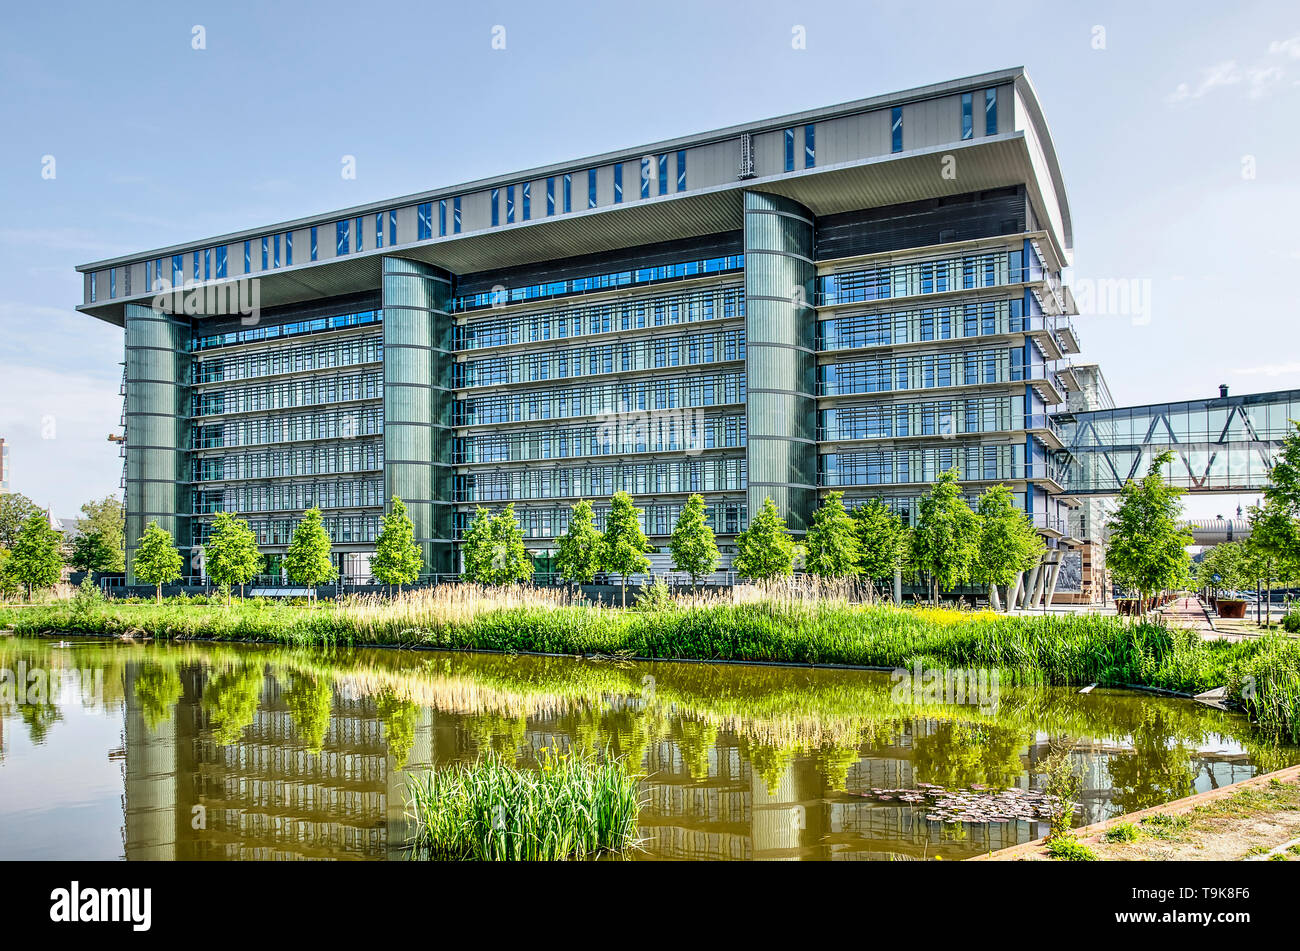 Leiden, Niederlande, 18. Mai 2019: Die moderne architure der Leiden University Medical Center Forschung Gebäude in den angrenzenden Teich widerspiegelt Stockfoto